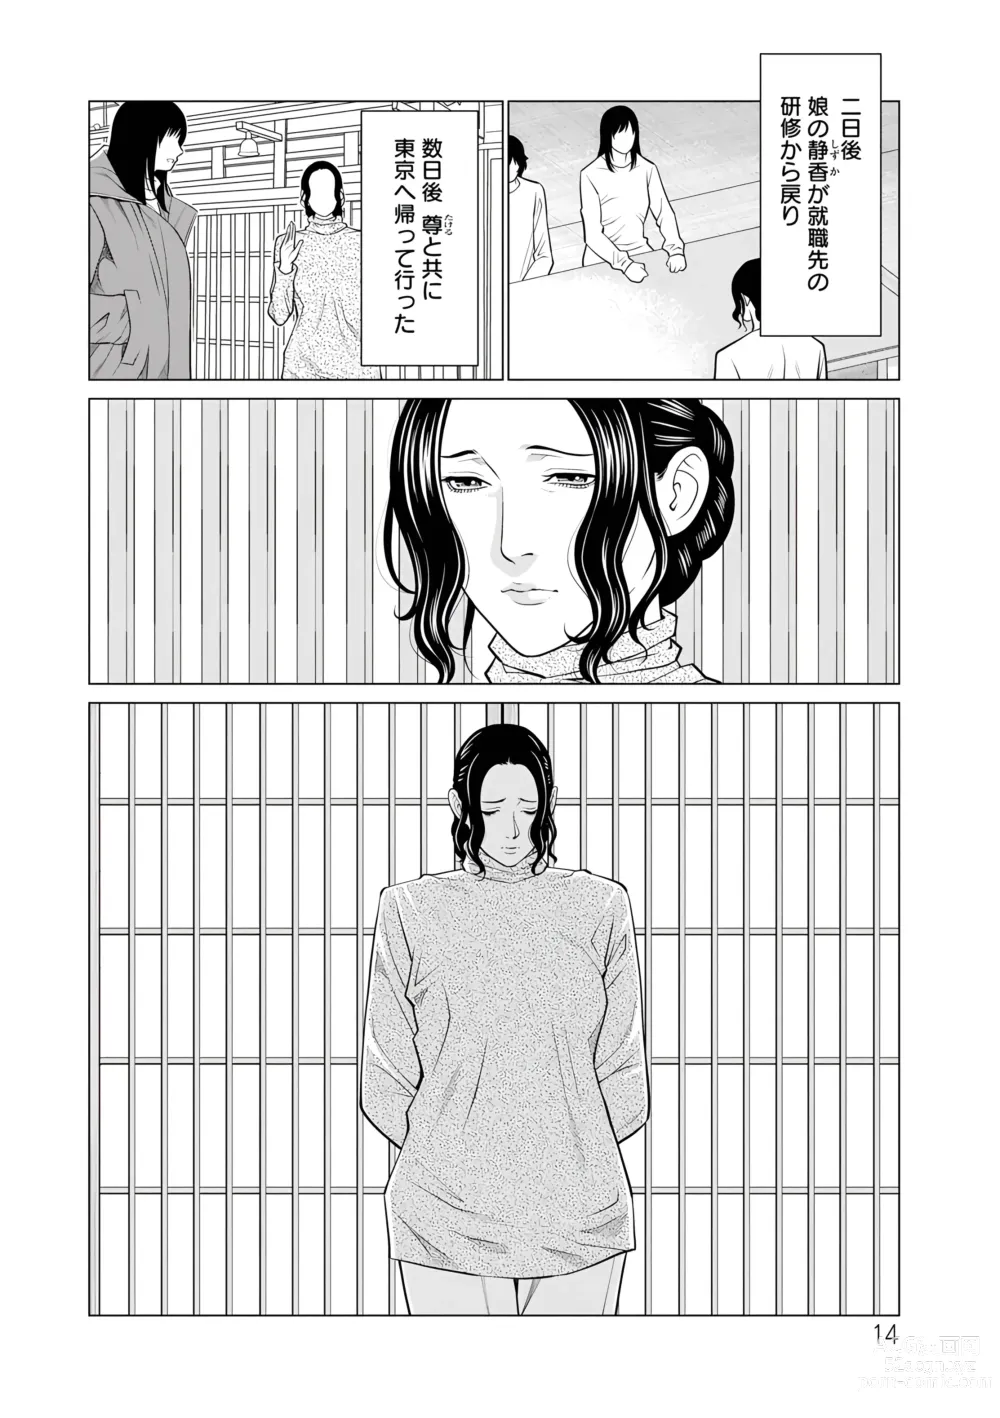 Page 14 of manga Rengoku no Sono - The Garden of Purgatory 2